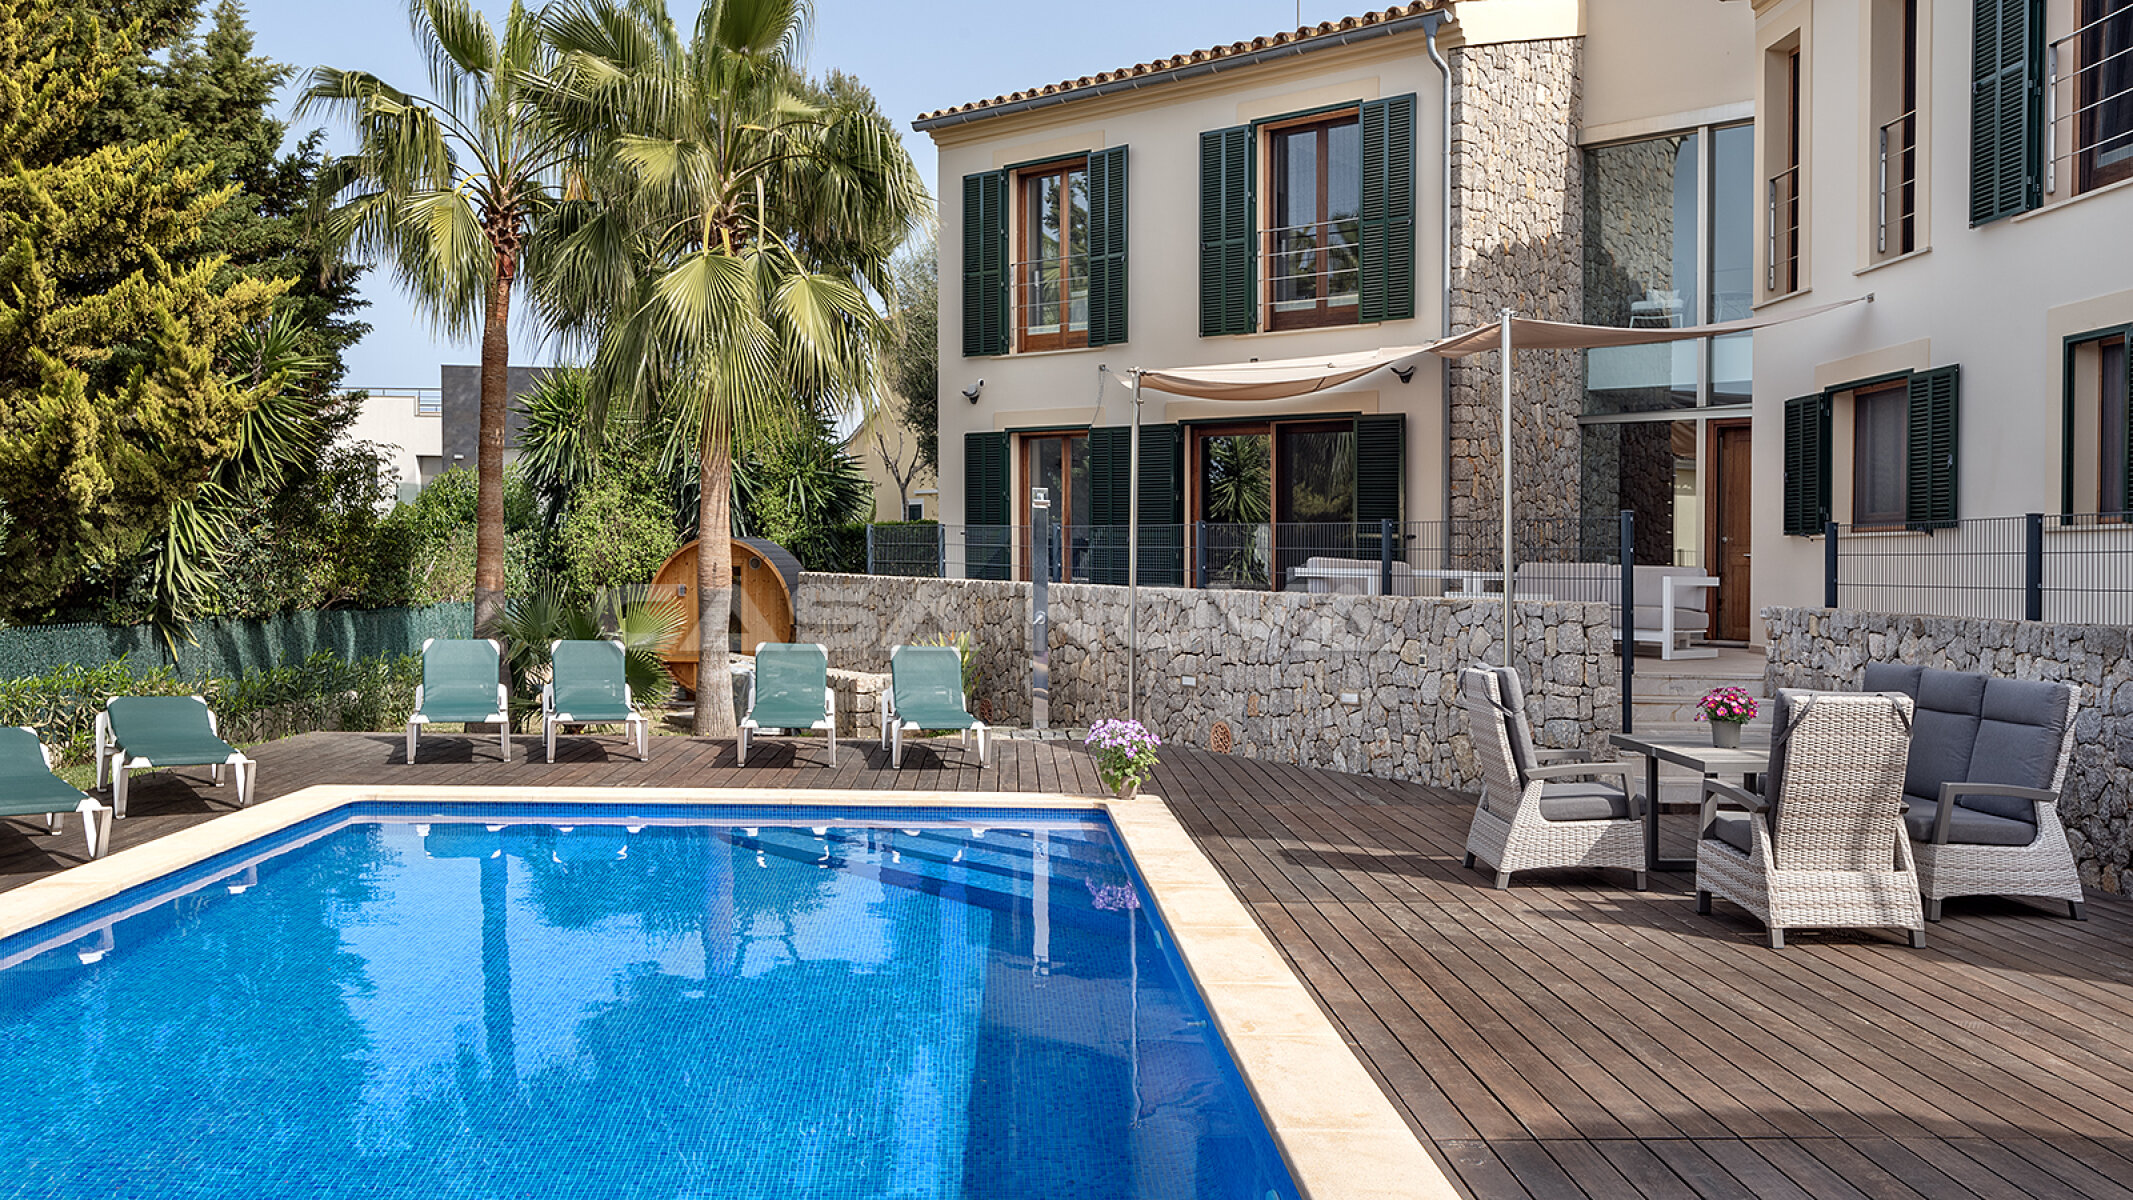 EXCLUSIVA CON NOSOTROS: Villa fantstica con piscina